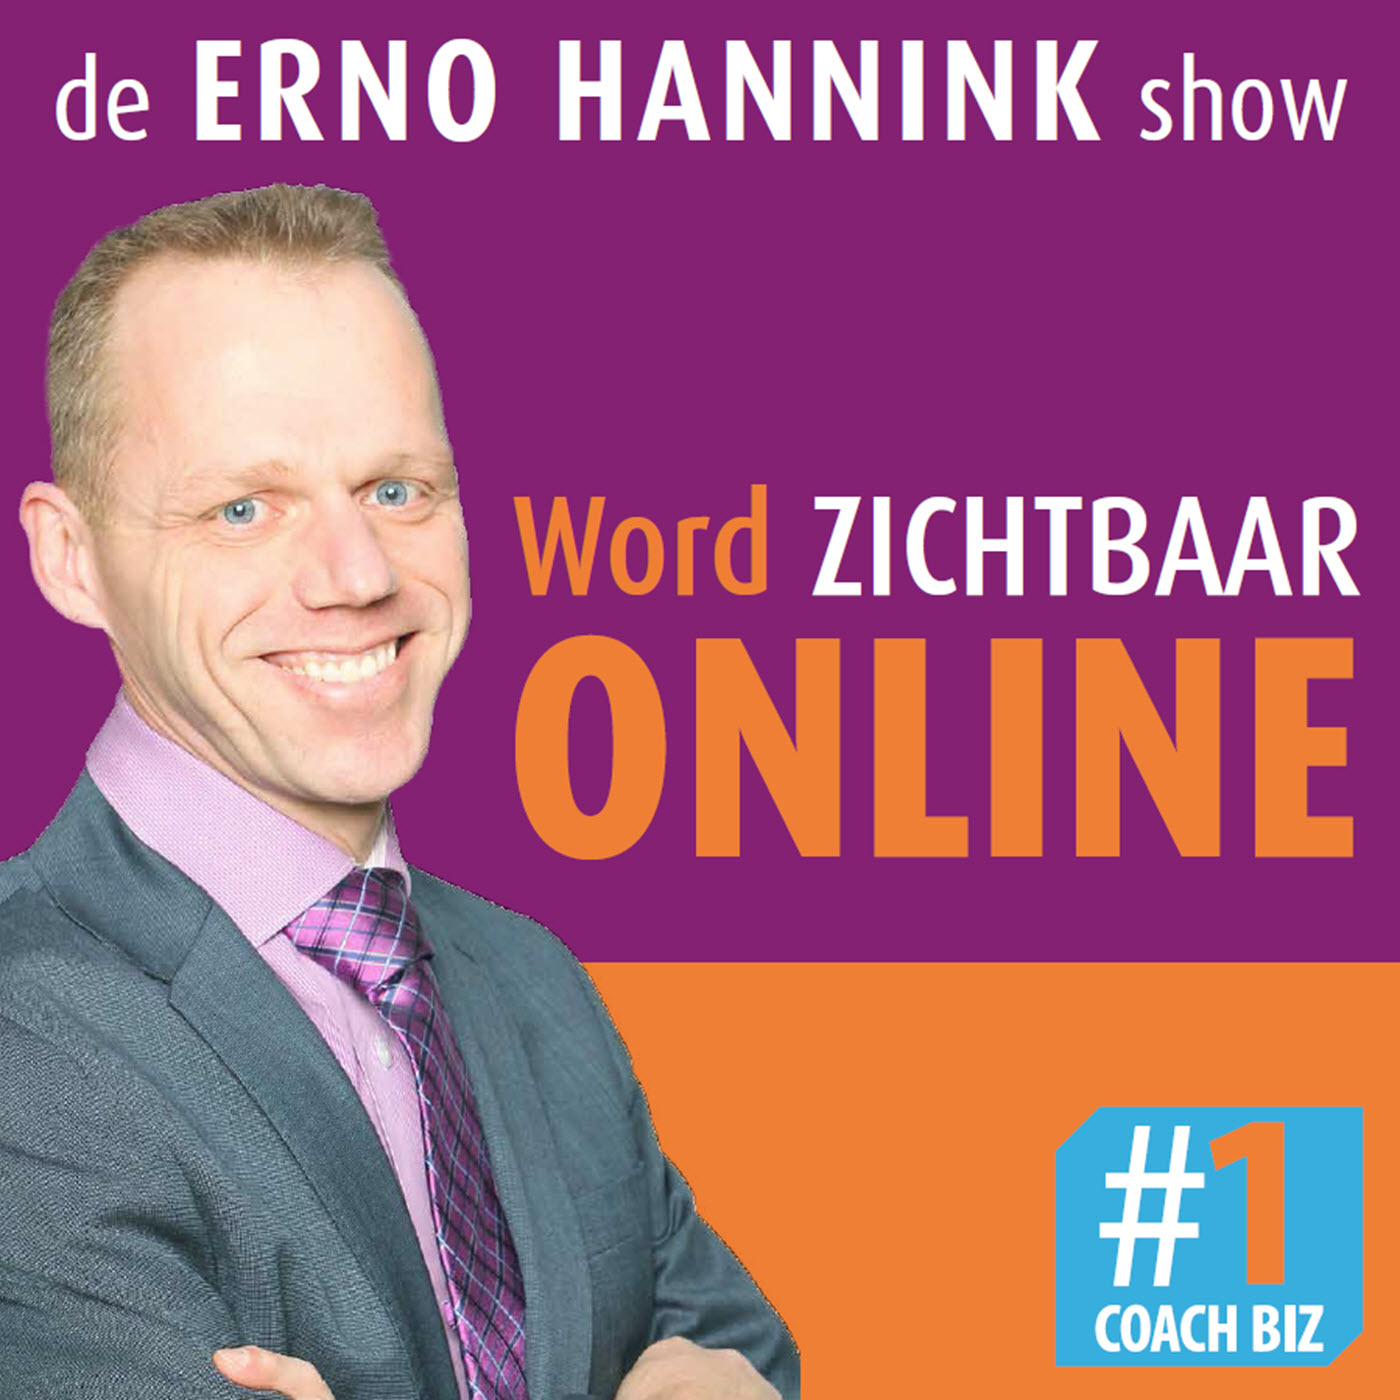 De eerste aflevering, meer over de Erno Hannink Show